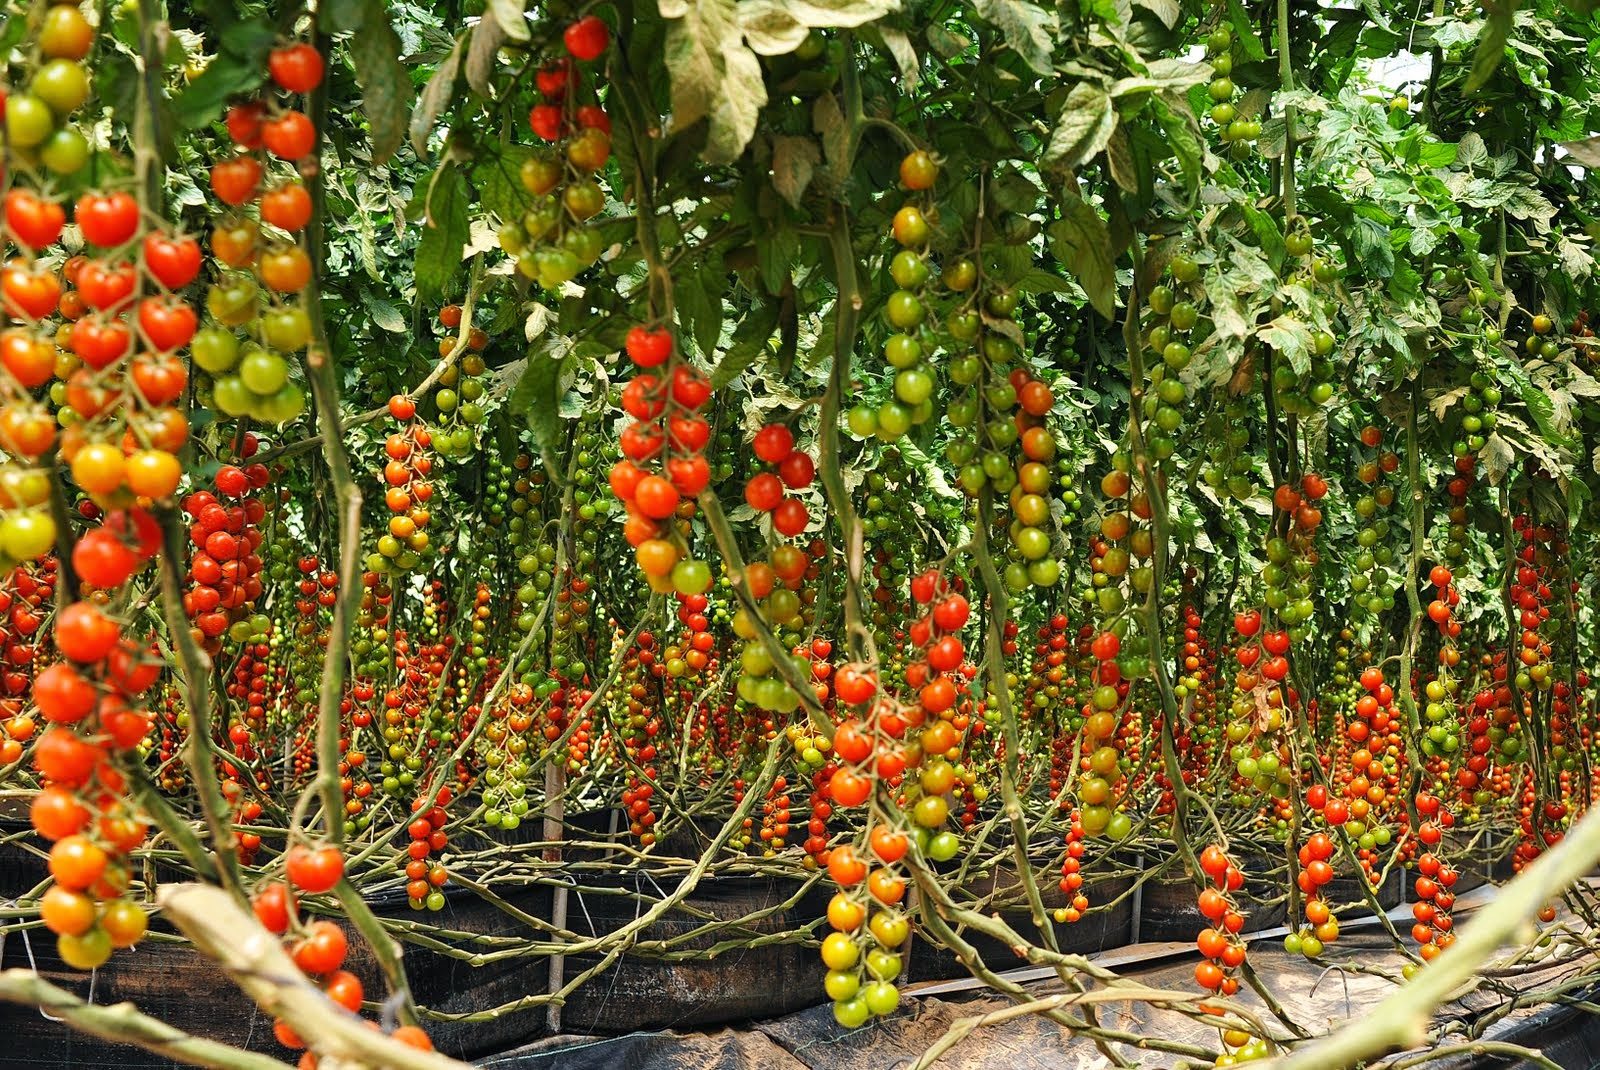 tomato farmers in Nigeria